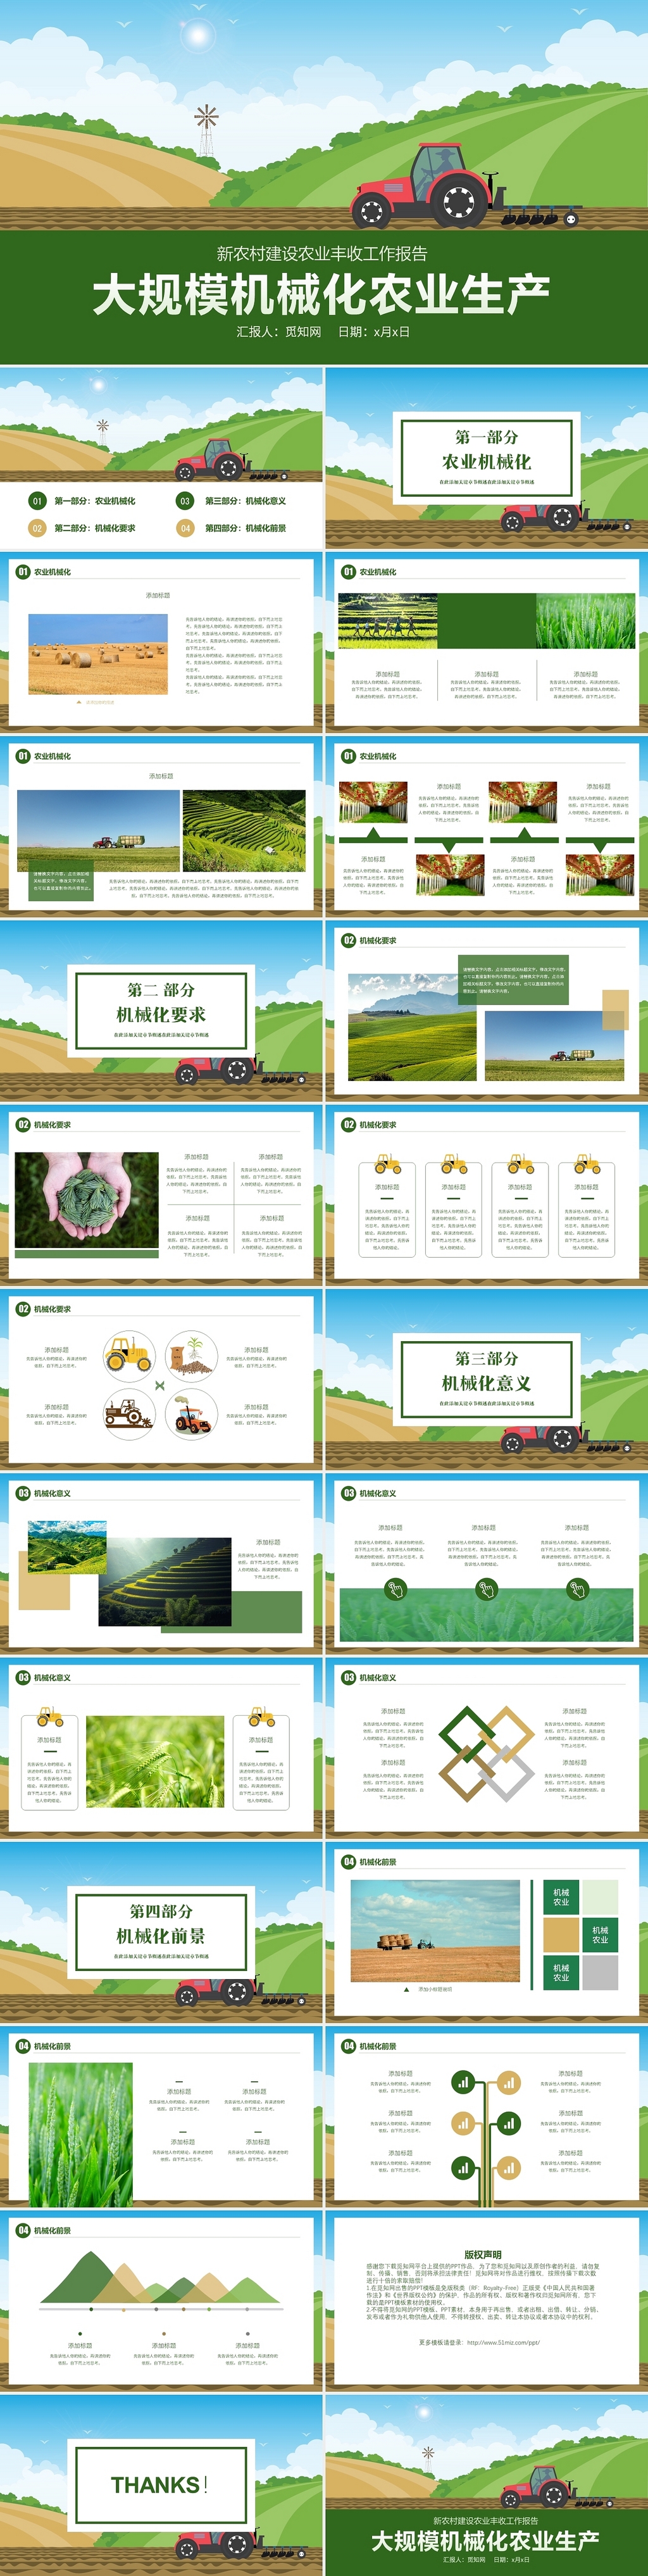 绿色卡通大规模机械化农业生产现代农业新农村生态农业PPT模板